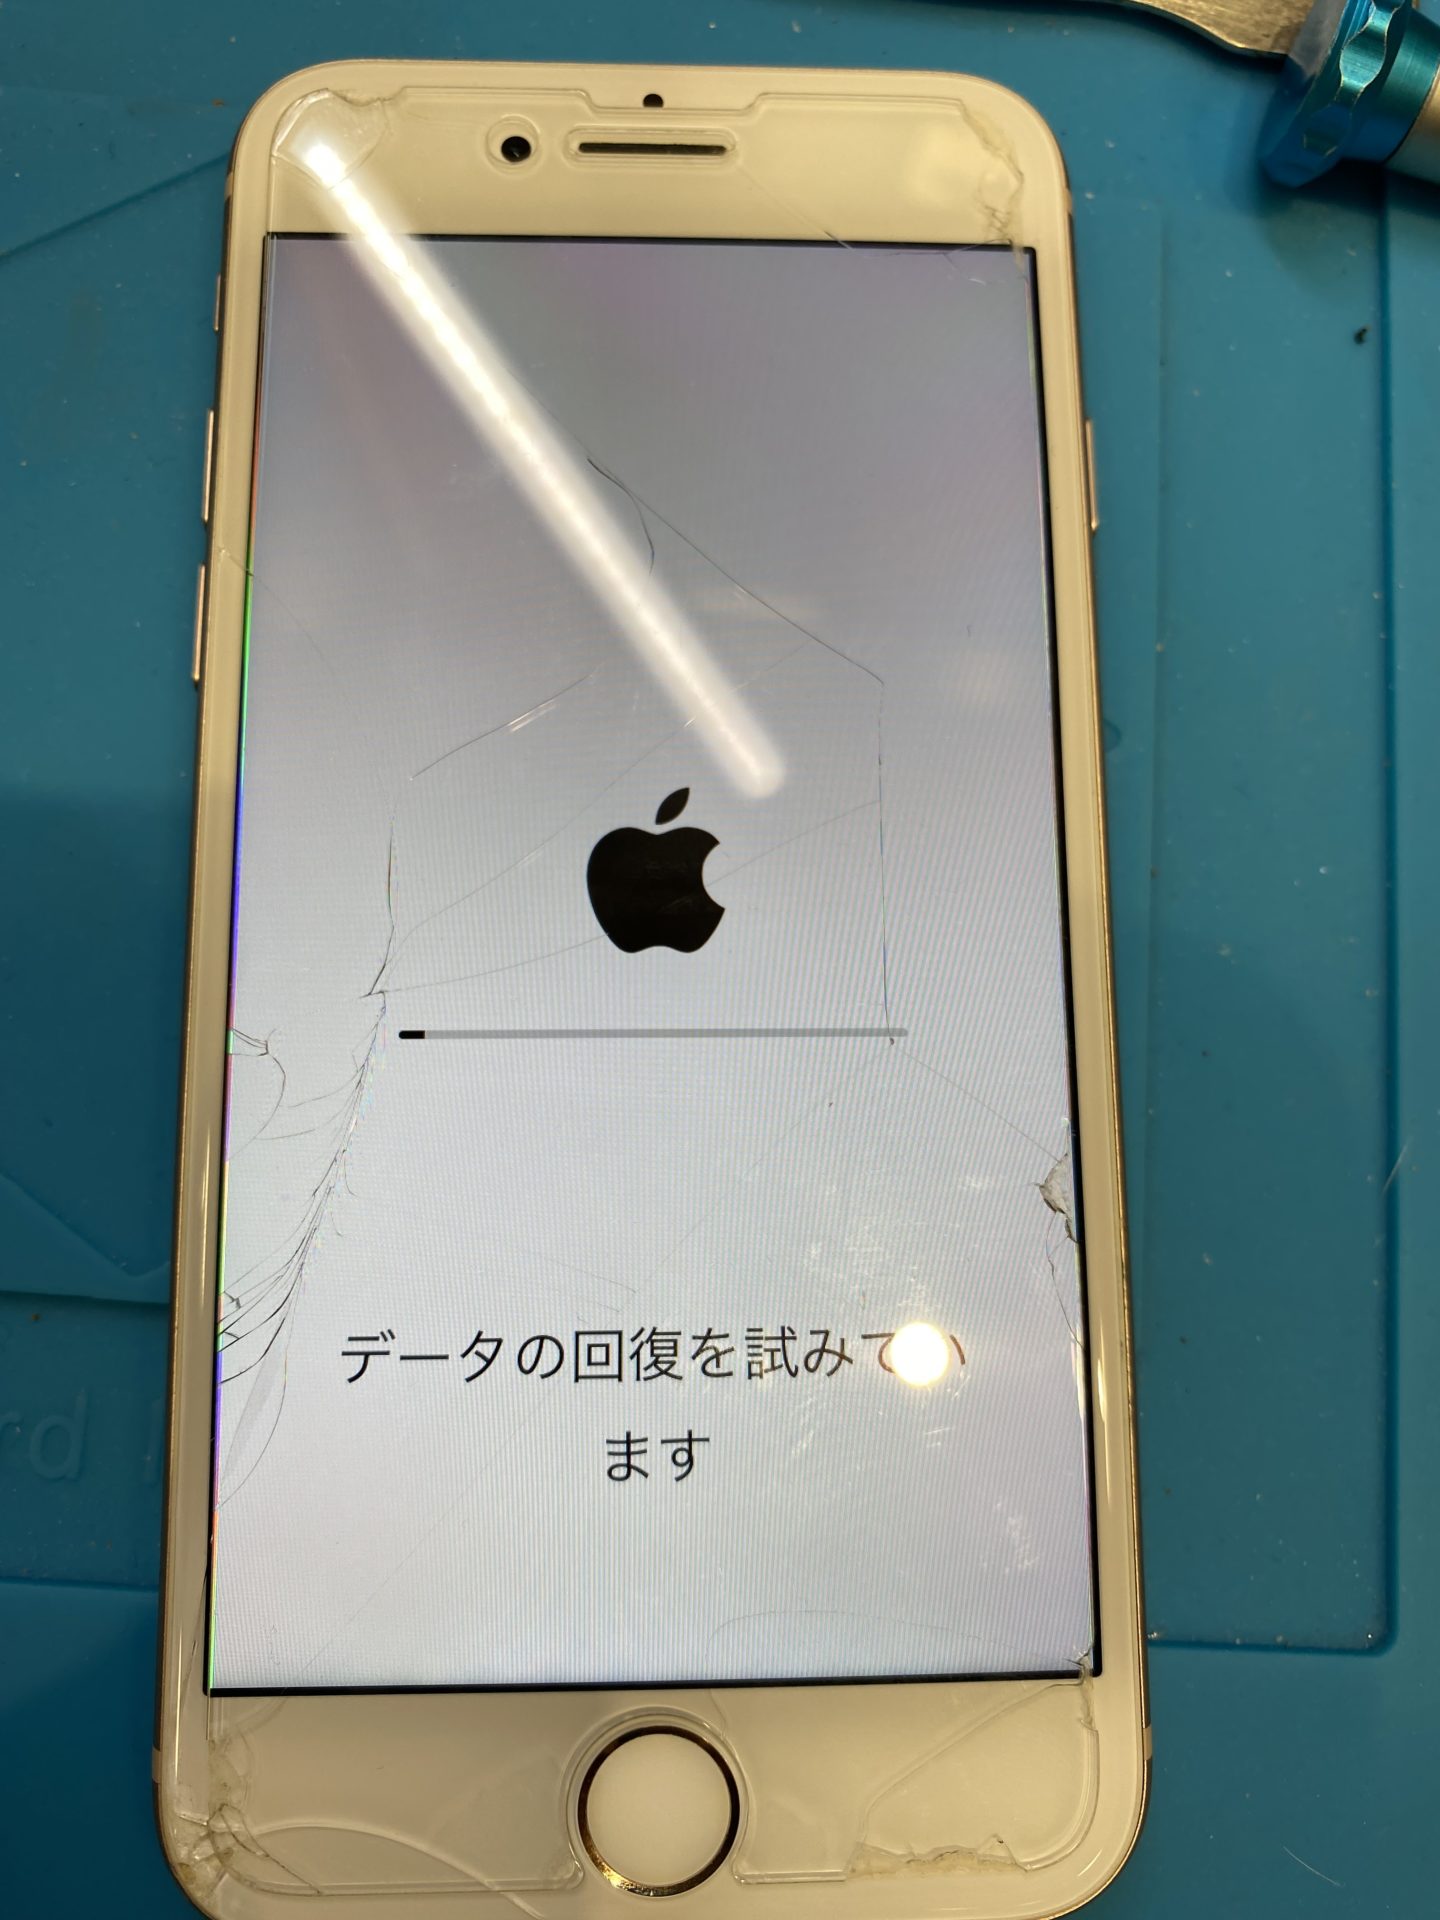 新規購入iPhone 8 ゴールド/りんごループ状態 スマートフォン本体